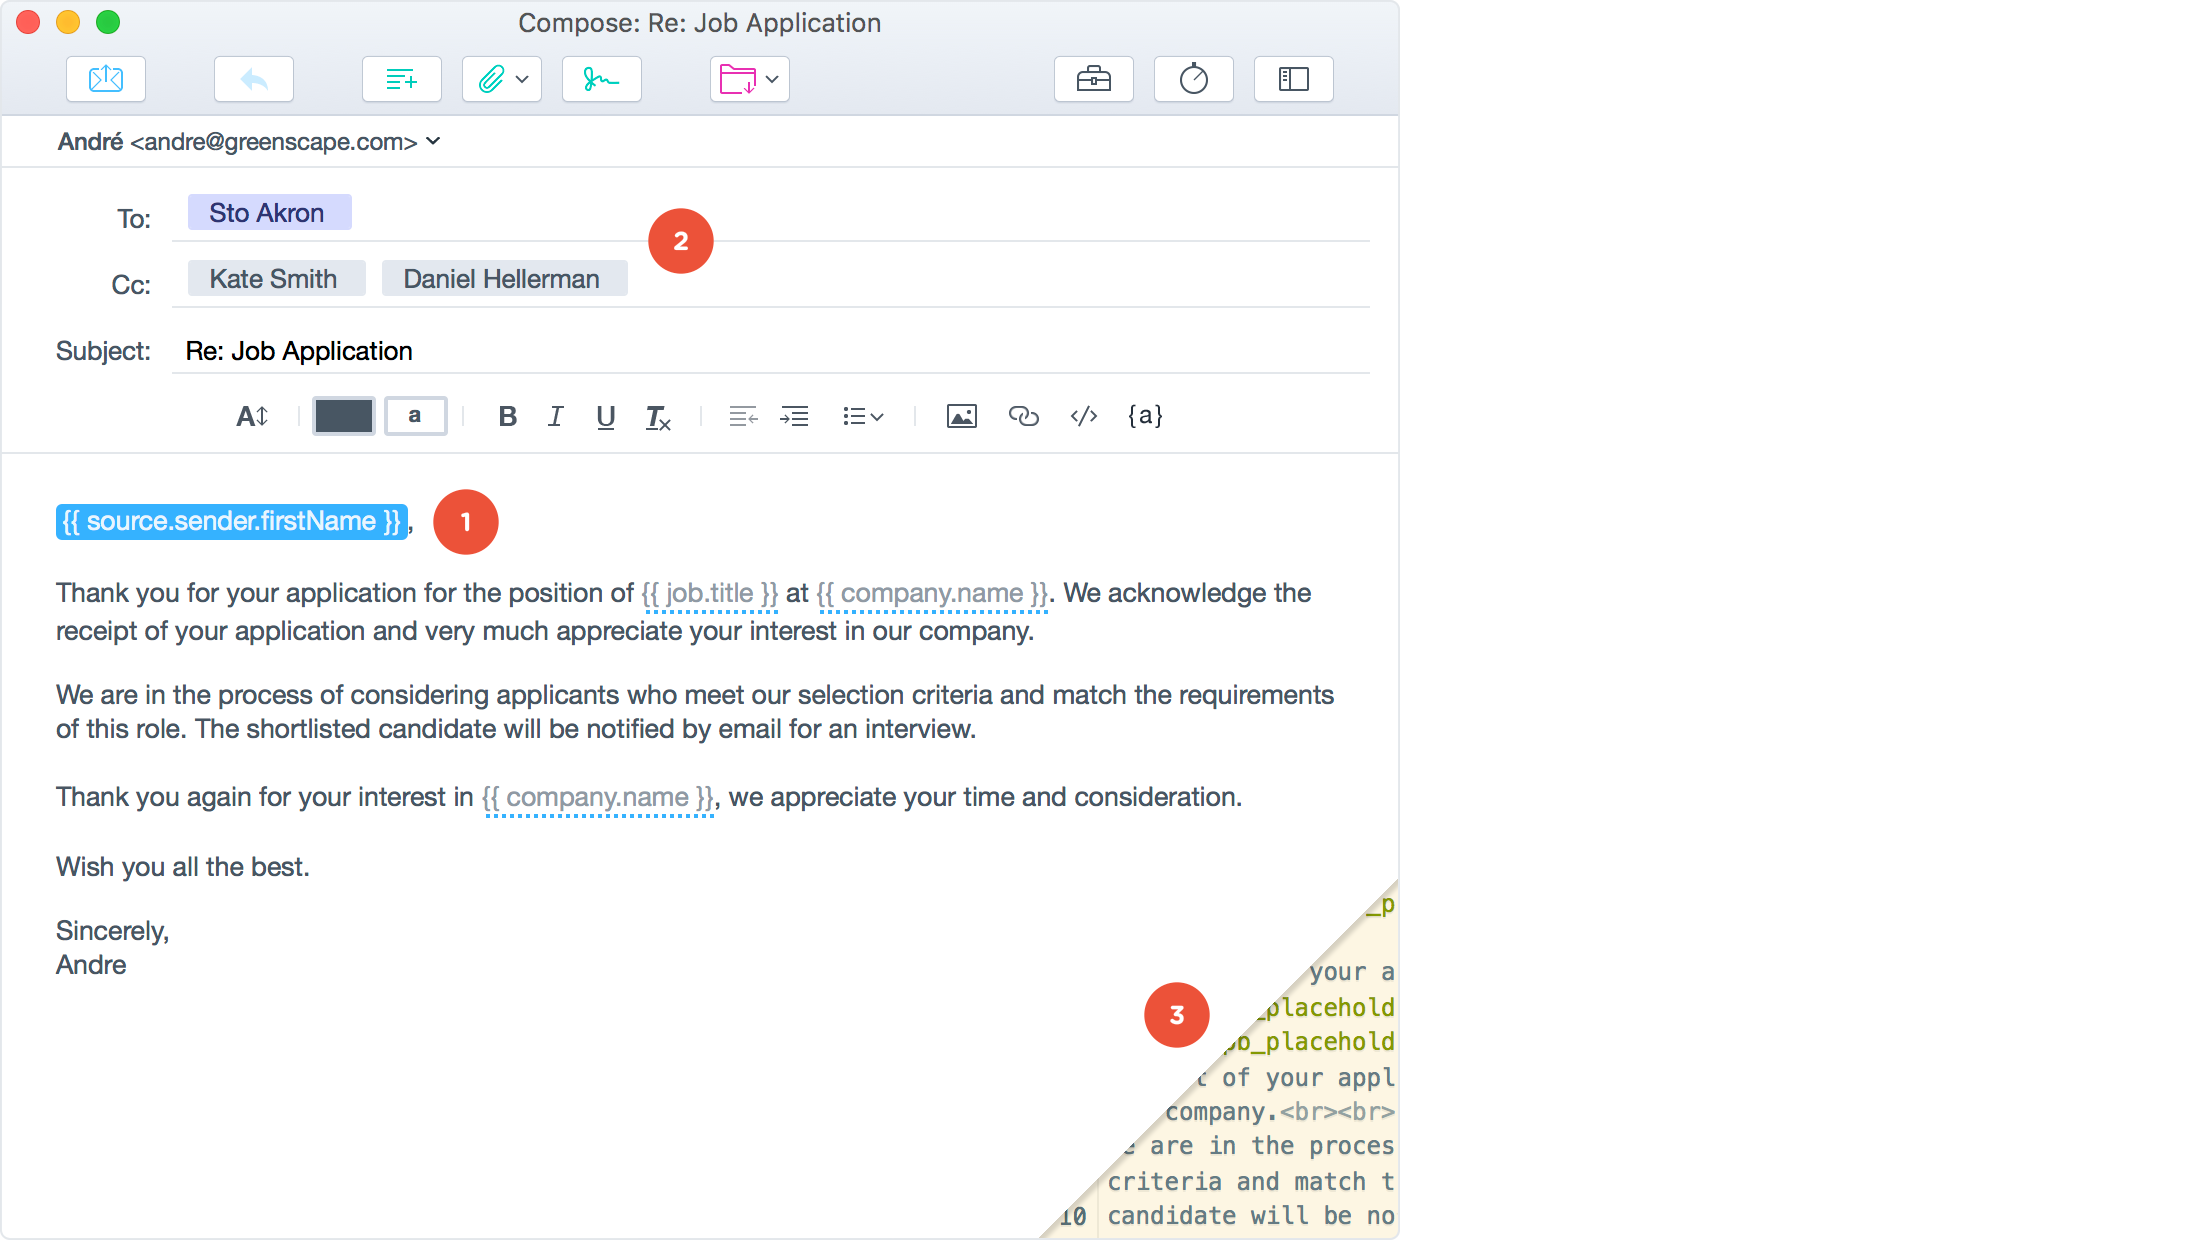 Postbox for Mac 7.0.3 序号版 - 优秀的邮件客户端工具